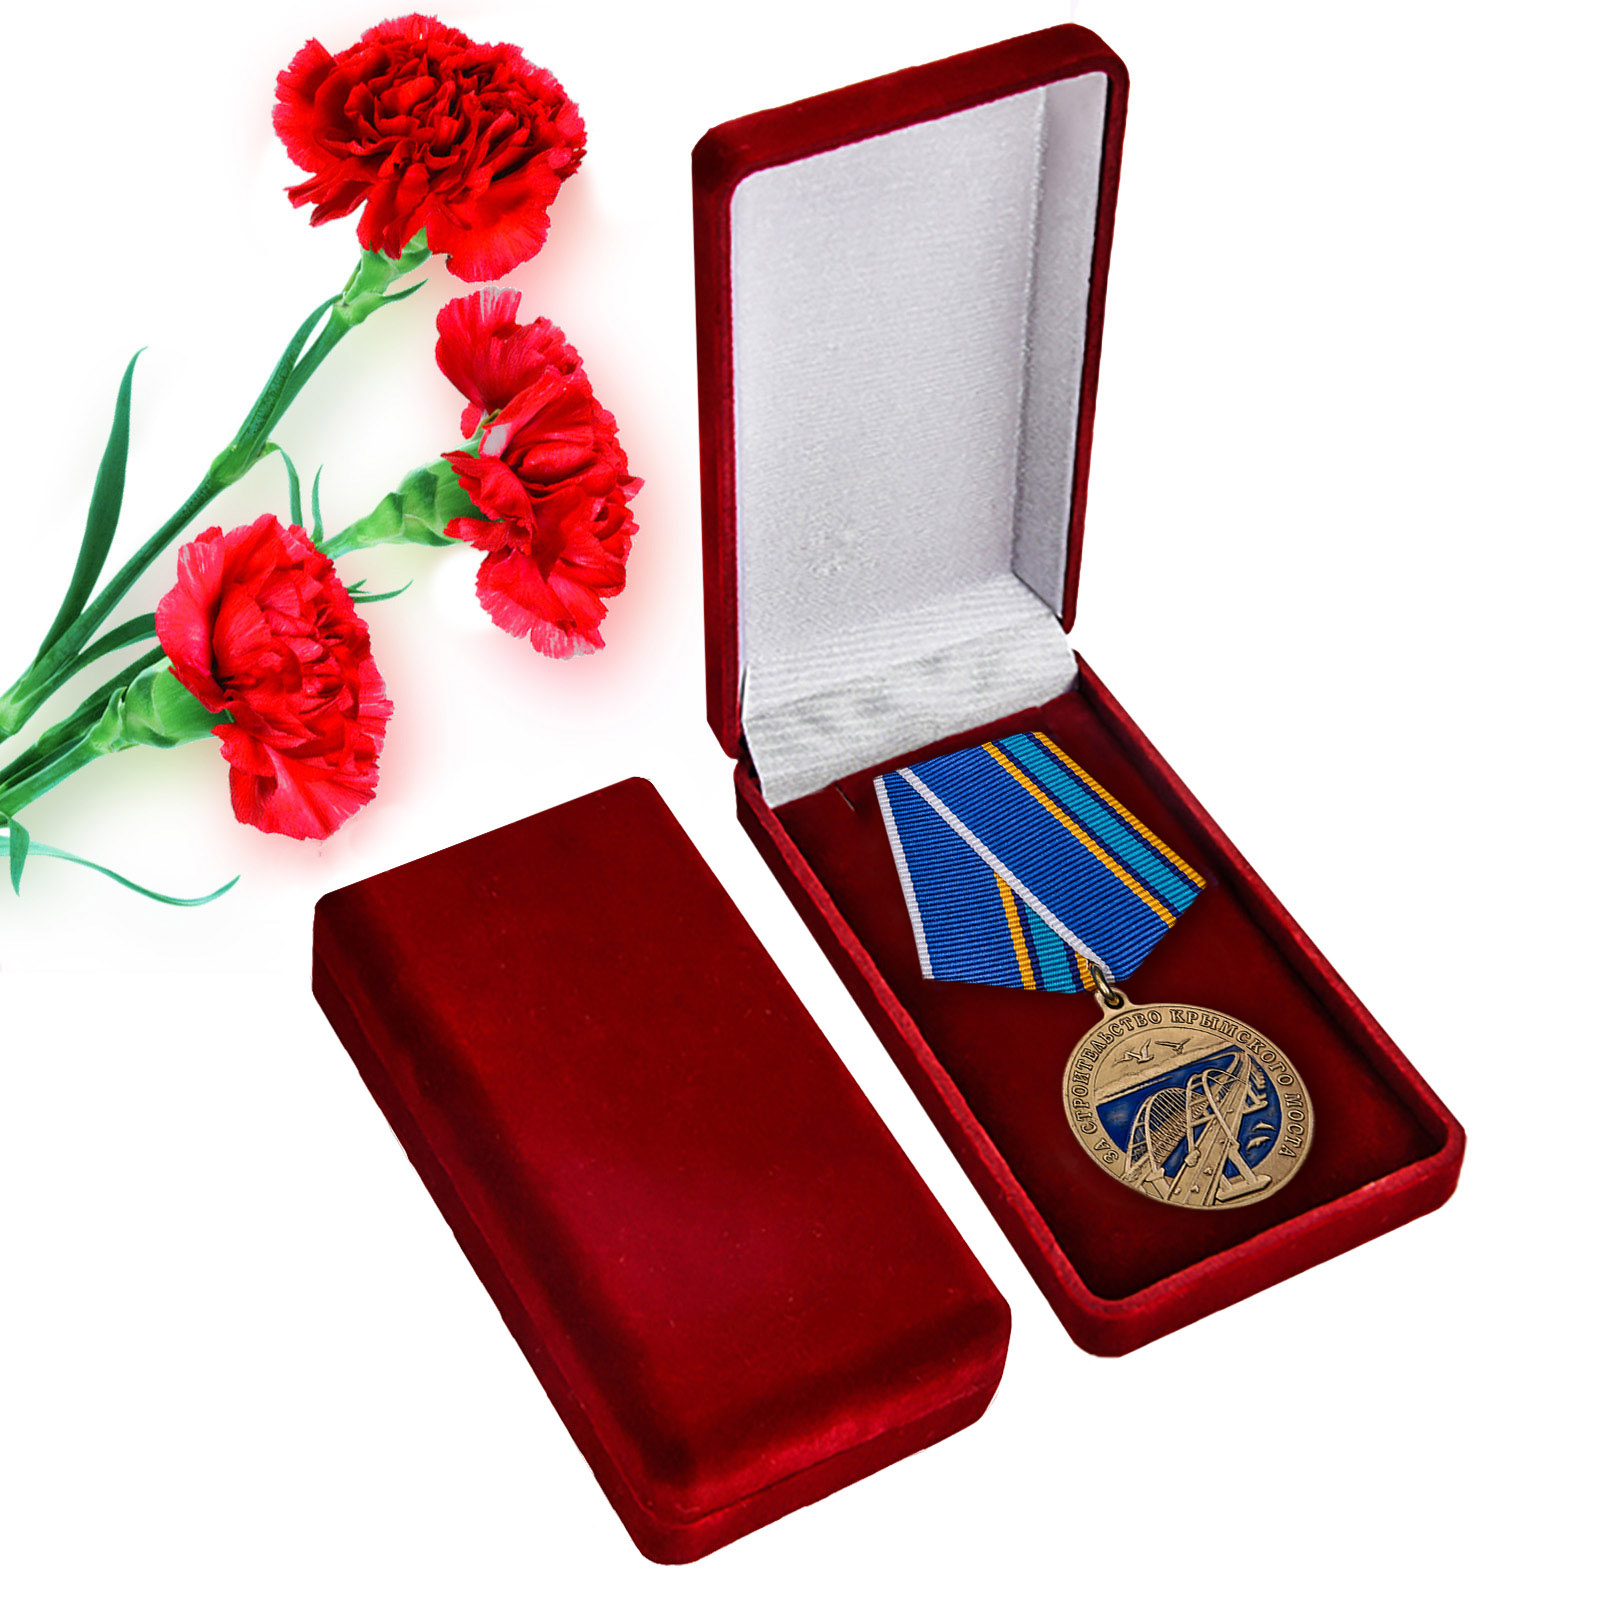 Купить памятную медаль "За строительство Крымского моста" оптом или в розницу